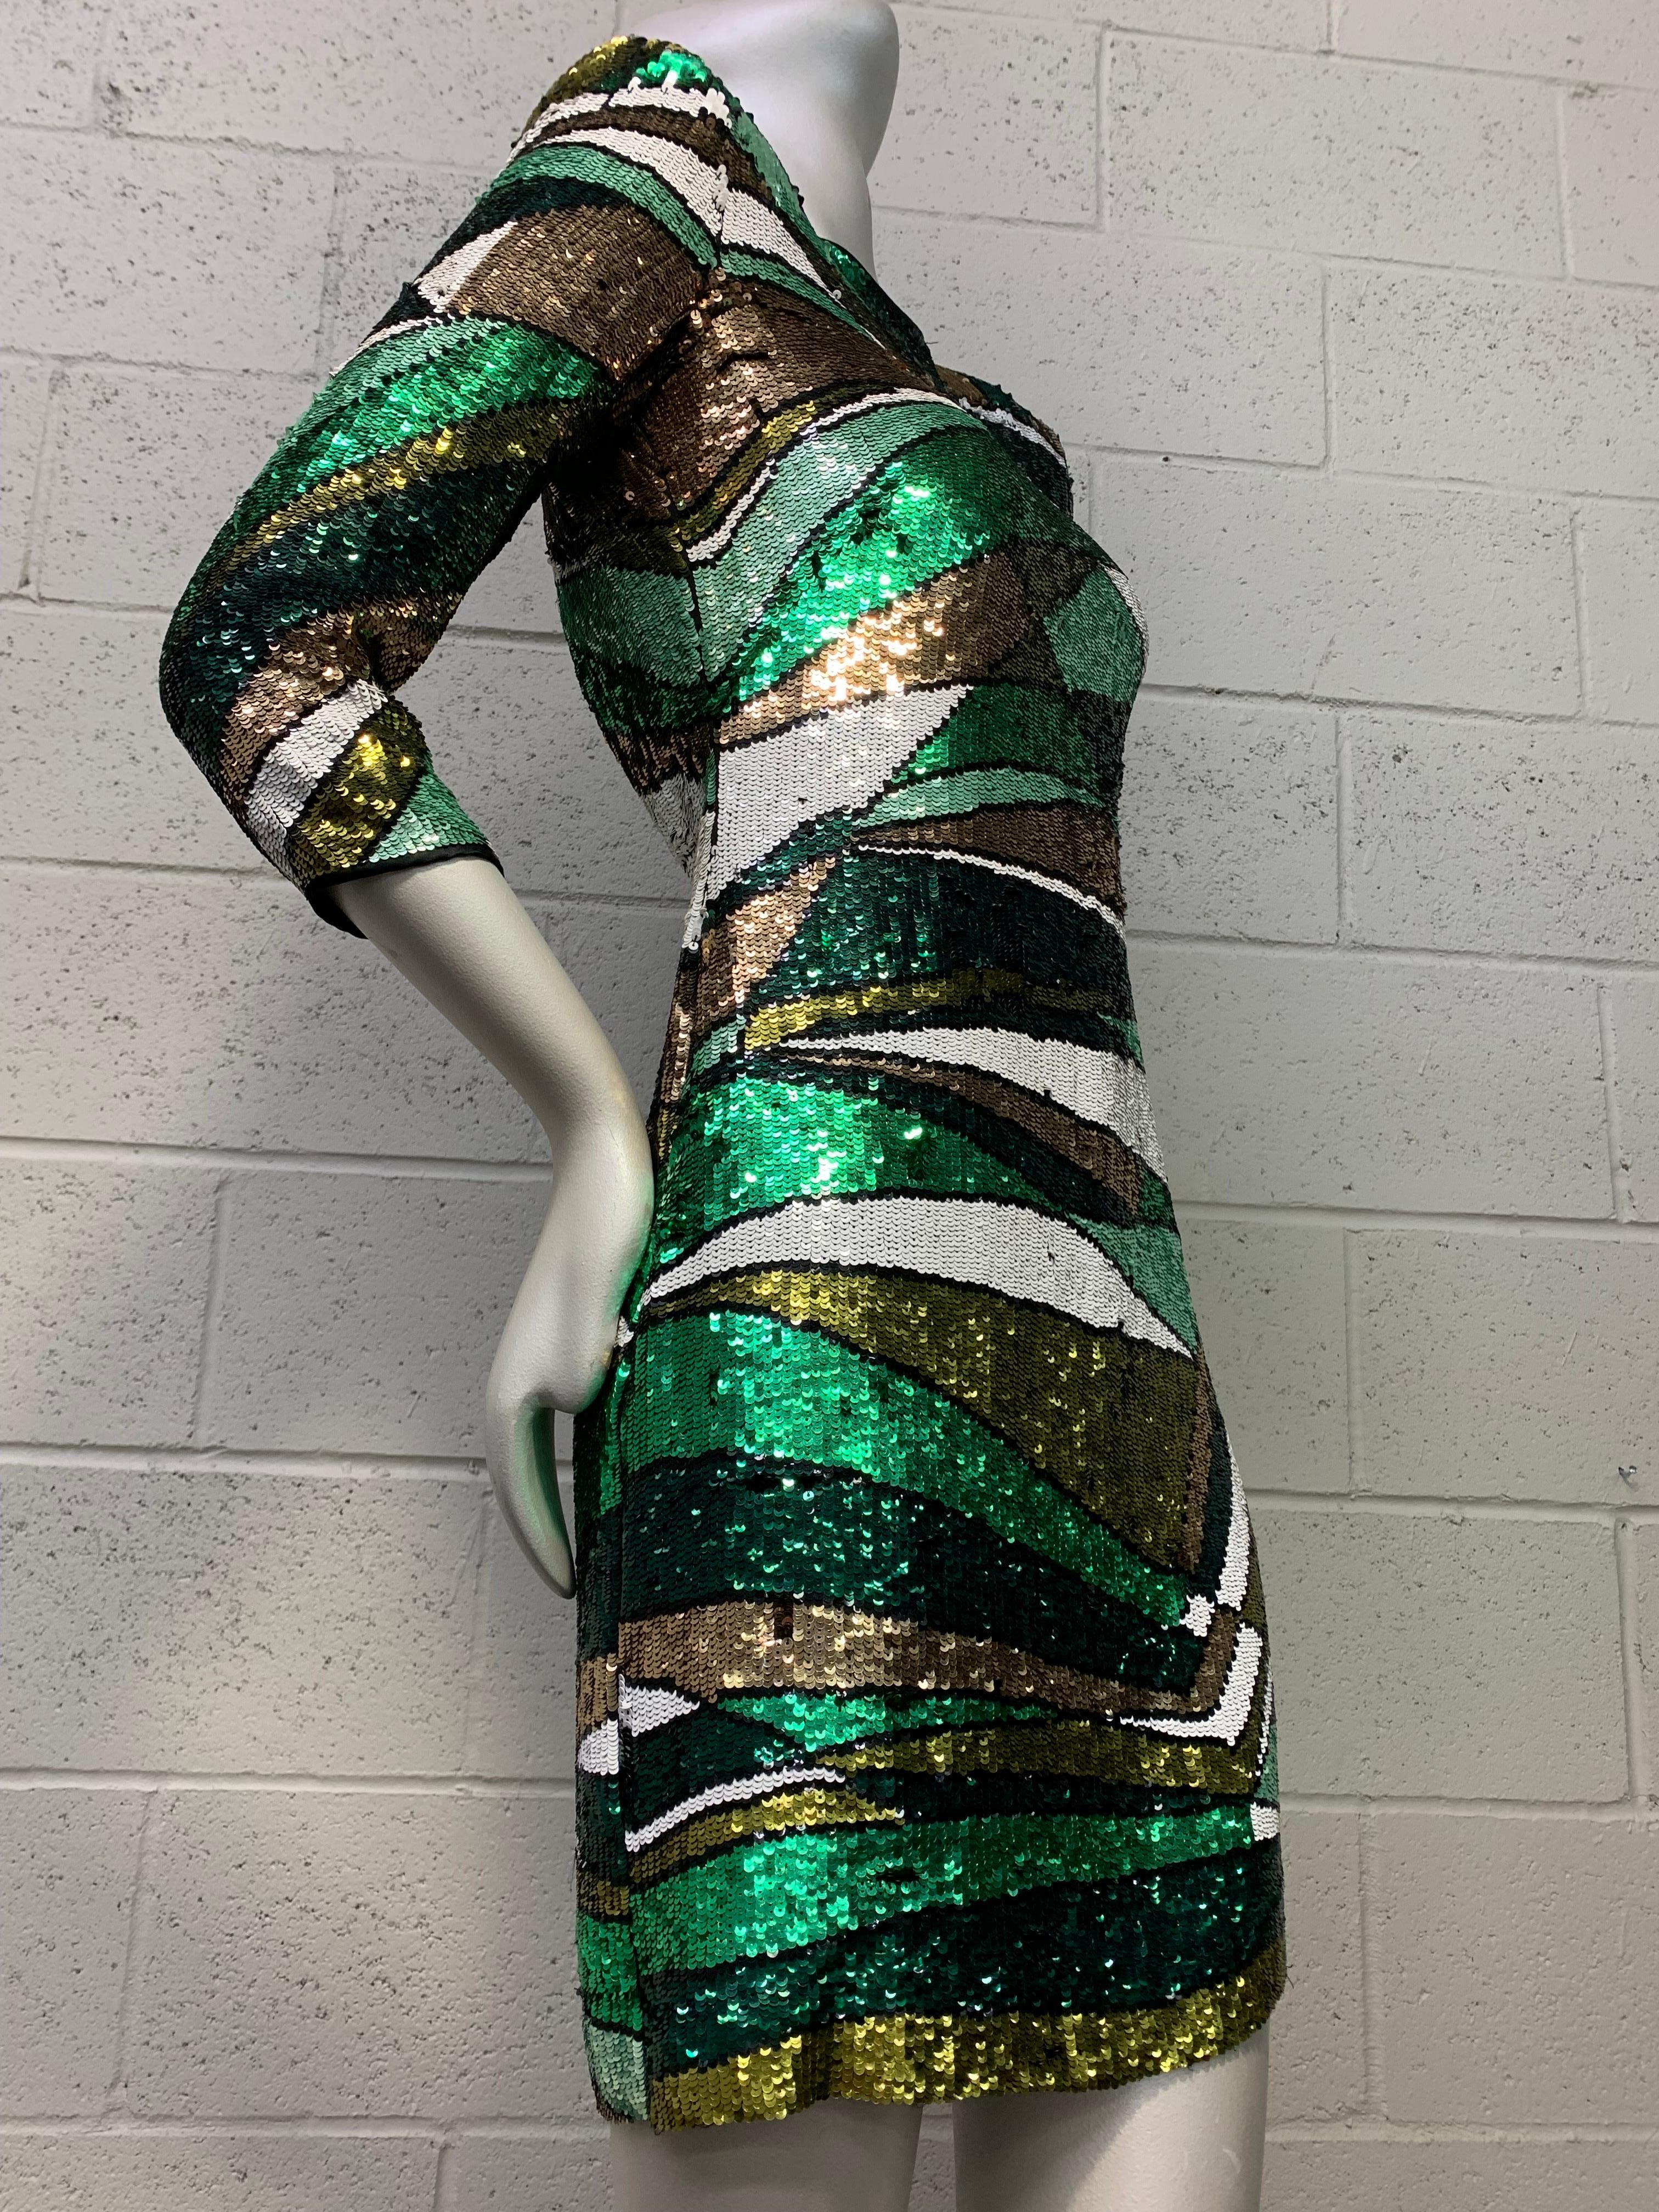 Emilio Pucci Grünes, metallisches Pailletten-Minikleid mit Prisma-Muster und offenem Schlüsselloch im Rücken. Reißverschluss am Rücken. Haken und Öse im Nacken. Der Grundstoff ist aus Seide und gefüttert mit Seidenchiffon. Rundhalsausschnitt und